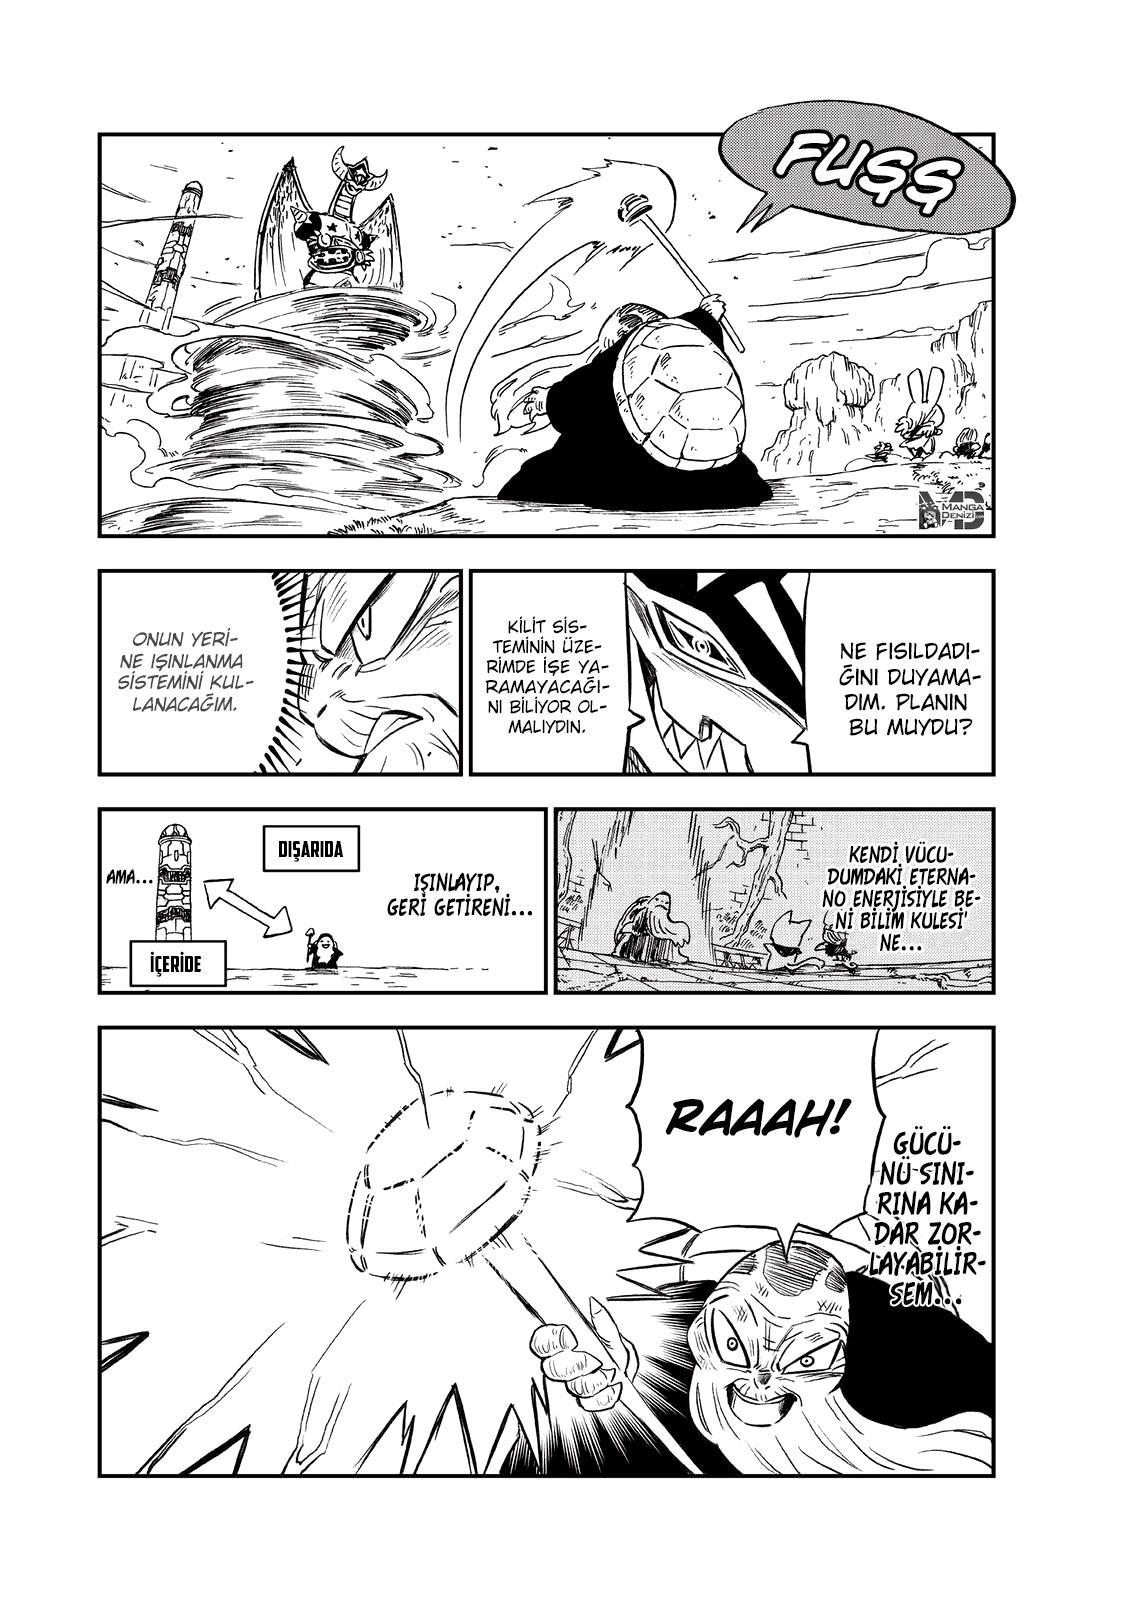 Fairy Tail: Happy's Great Adventure mangasının 76 bölümünün 5. sayfasını okuyorsunuz.